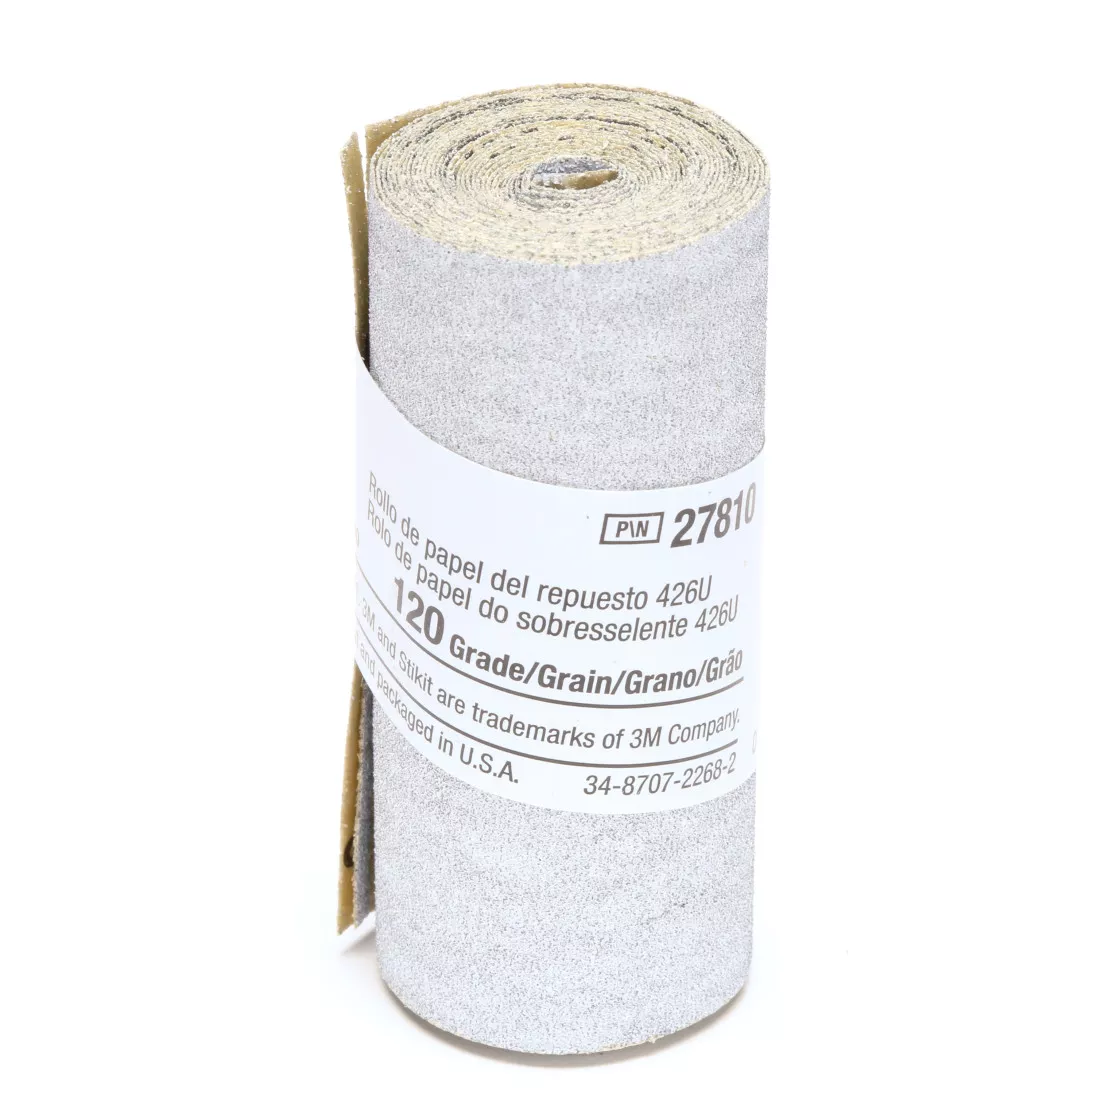 3M™ Stikit™ Paper Refill Roll 426U, 120 A-weight, 2-1/2 in x 70 in, 10
per inner 50 per case